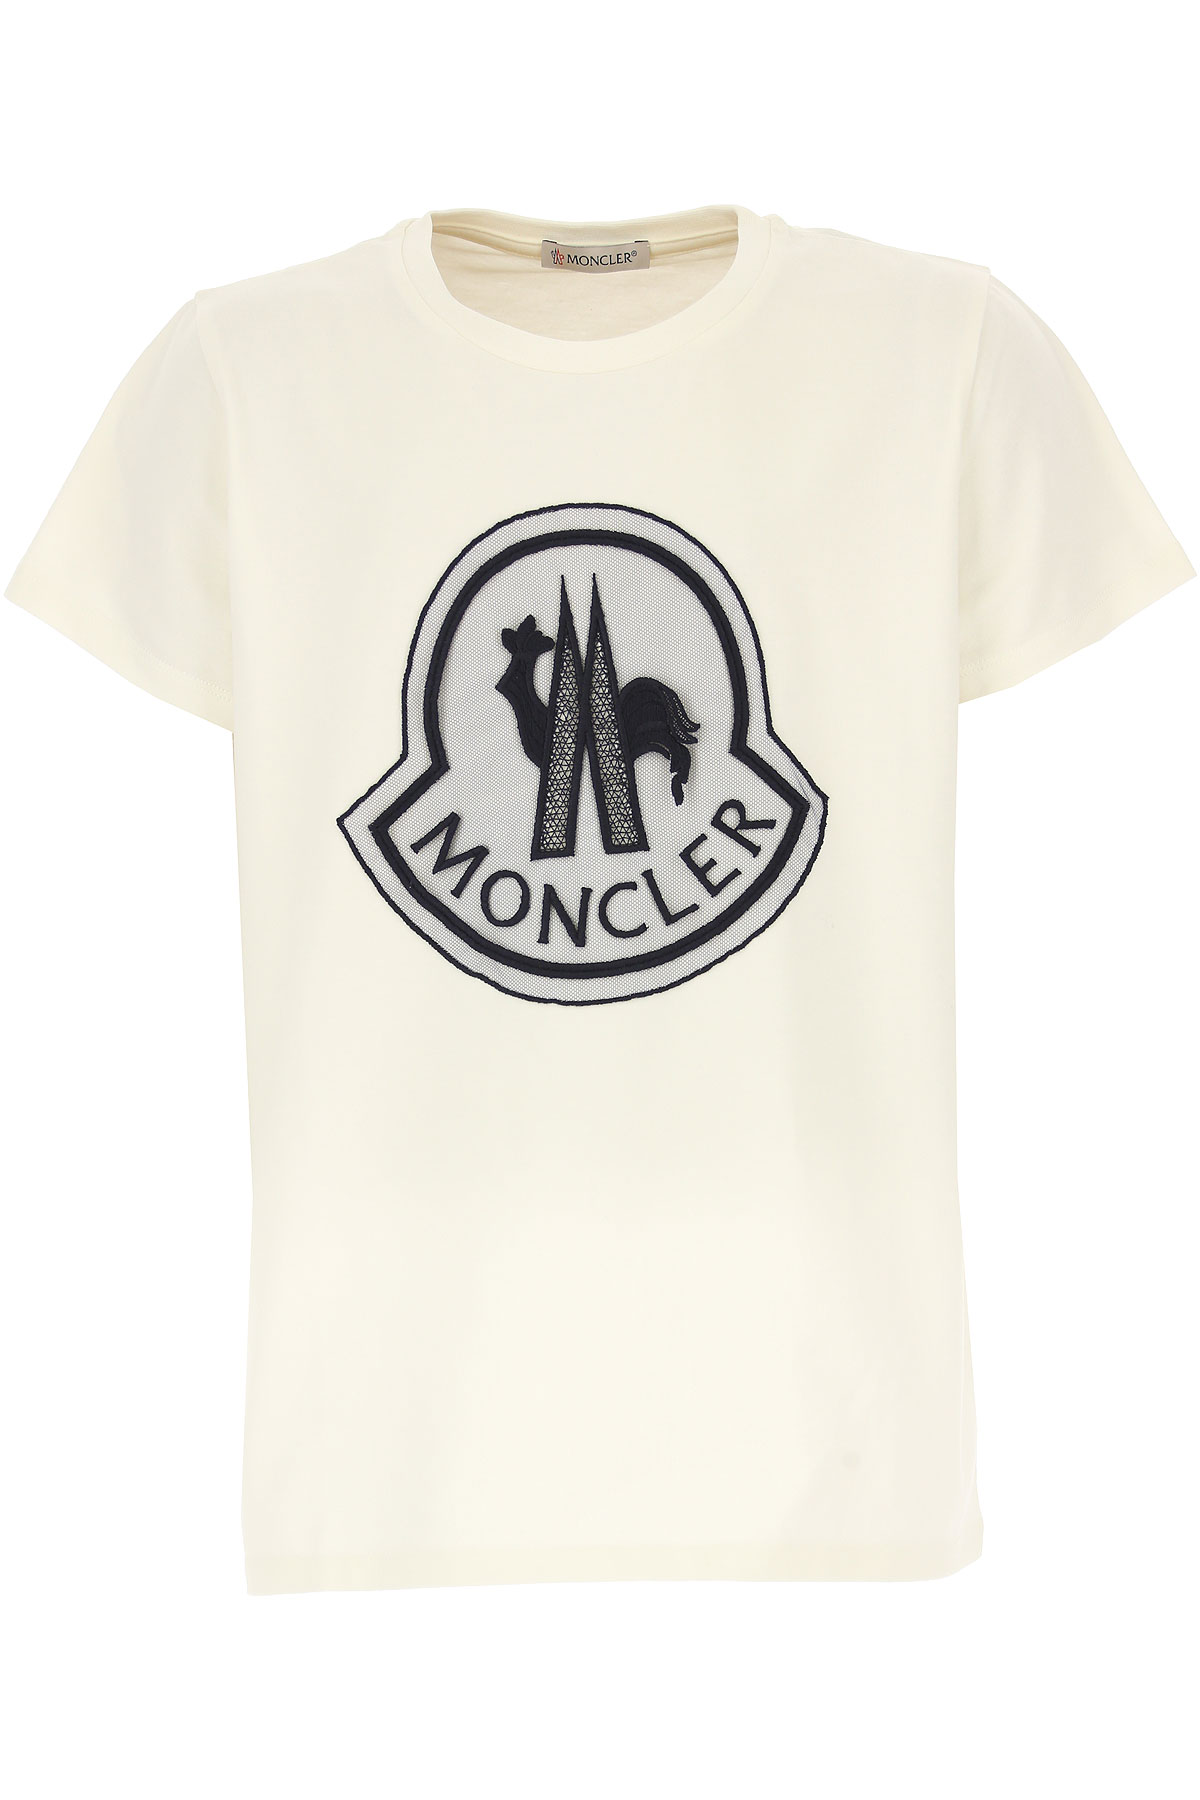 Moncler Kinder T-Shirt für Mädchen Günstig im Outlet Sale, Weiss, Baumwolle, 2017, 4Y 6Y 8Y